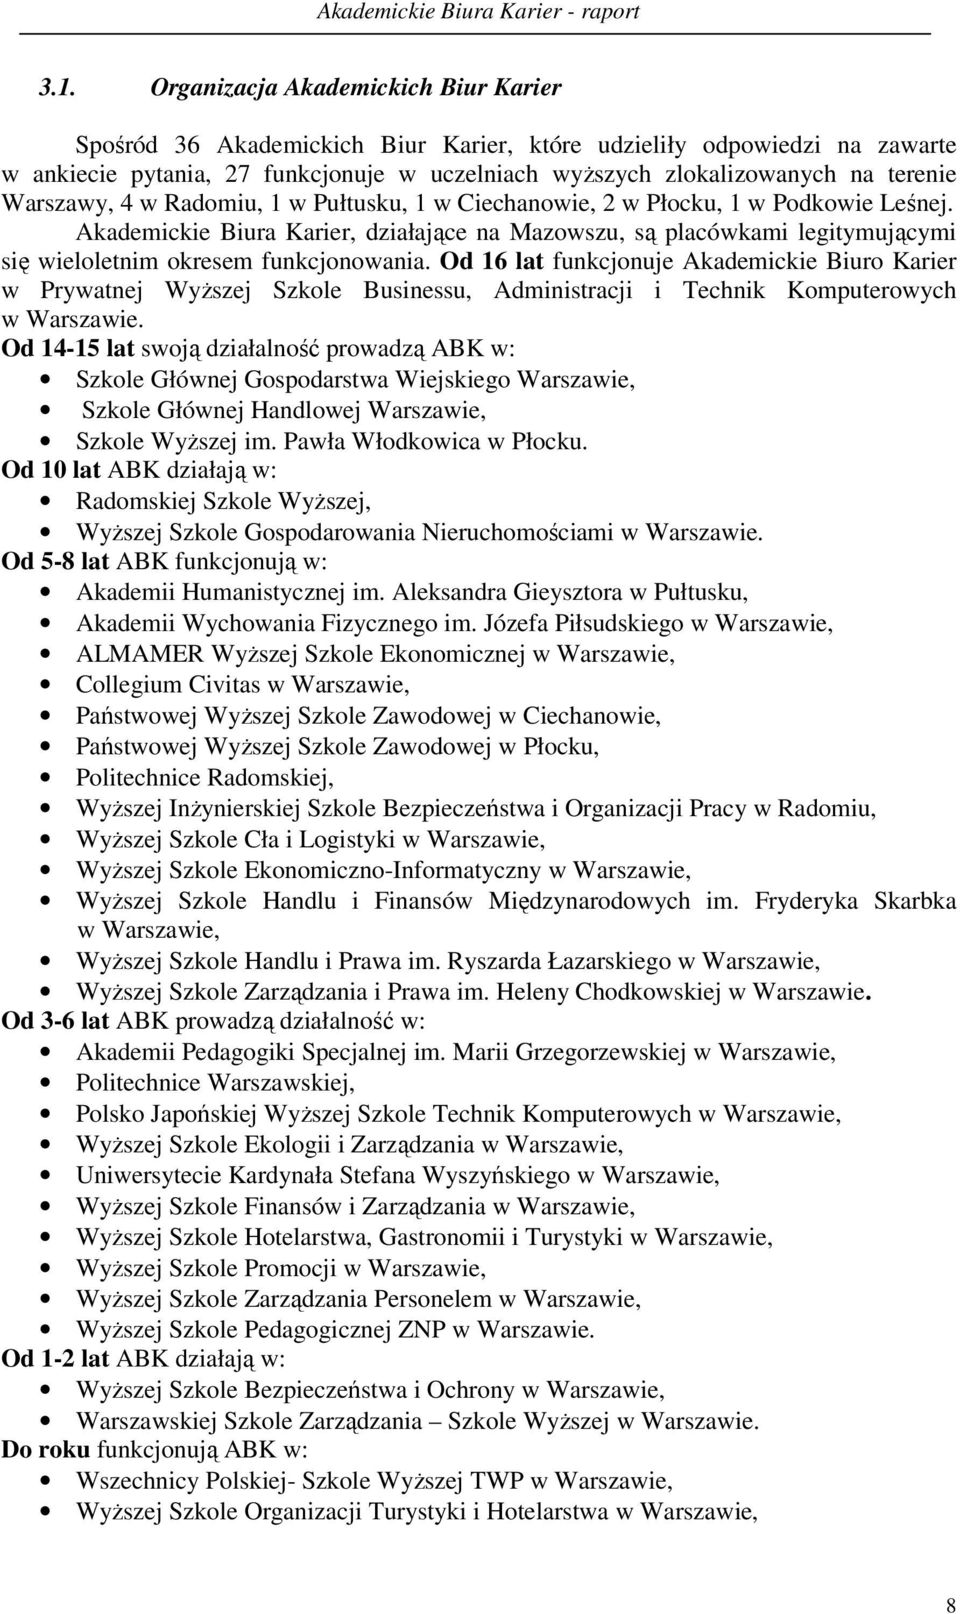 Akademickie Biura Karier, działające na Mazowszu, są placówkami legitymującymi się wieloletnim okresem funkcjonowania.